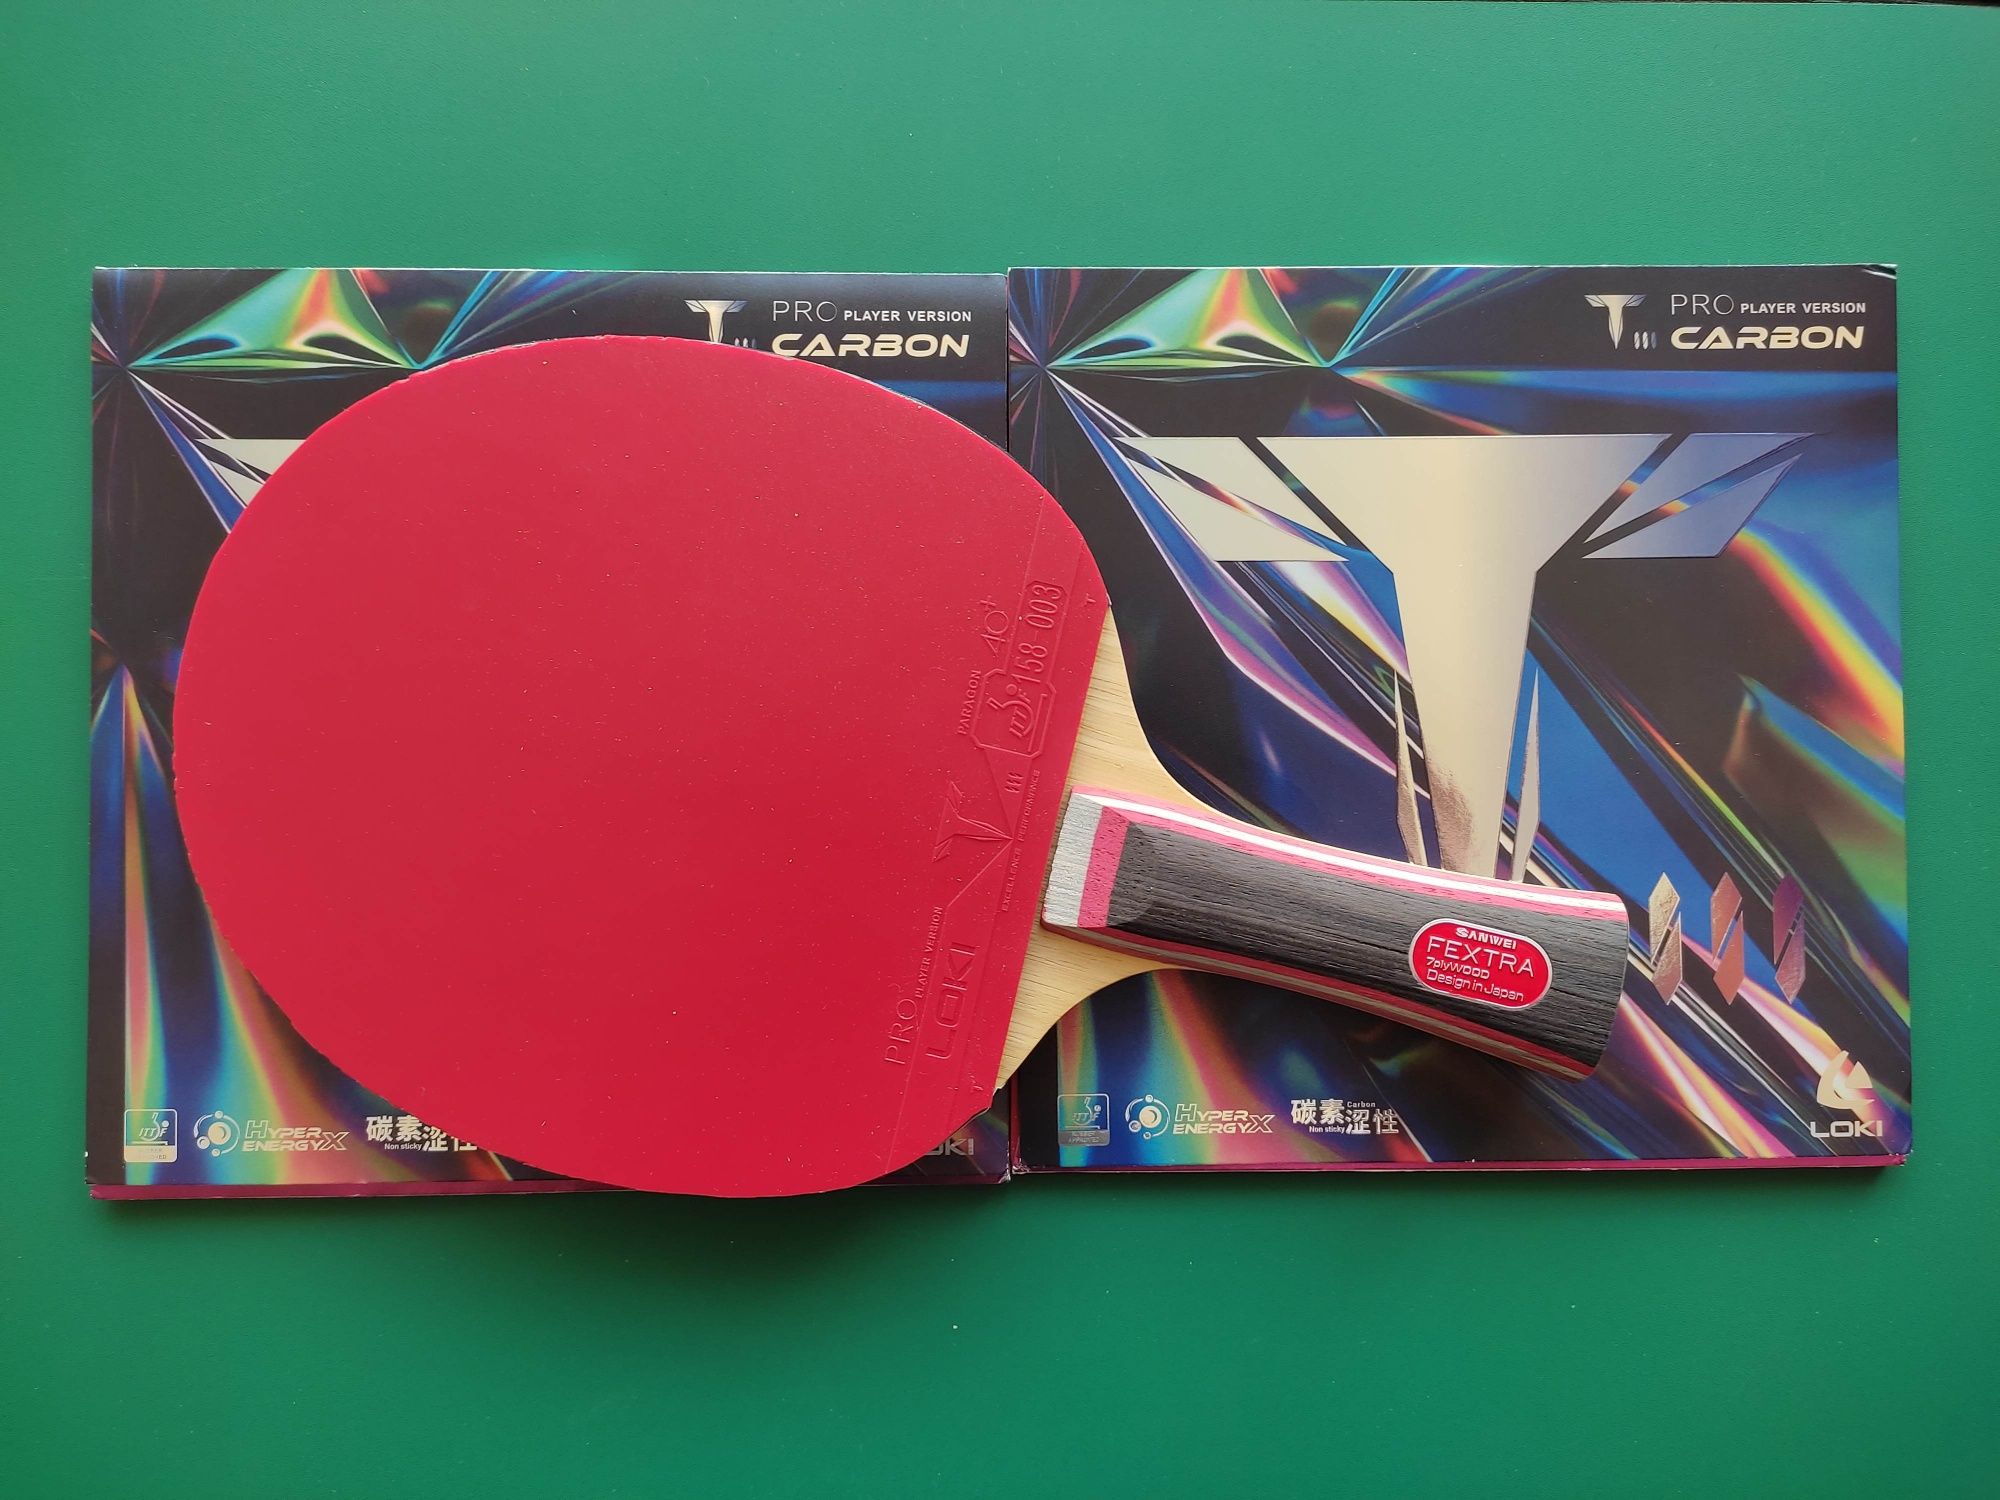 Sanwei Fextra 7 FL z okładzinami Loki T3 Carbon Pro tenis stołowy